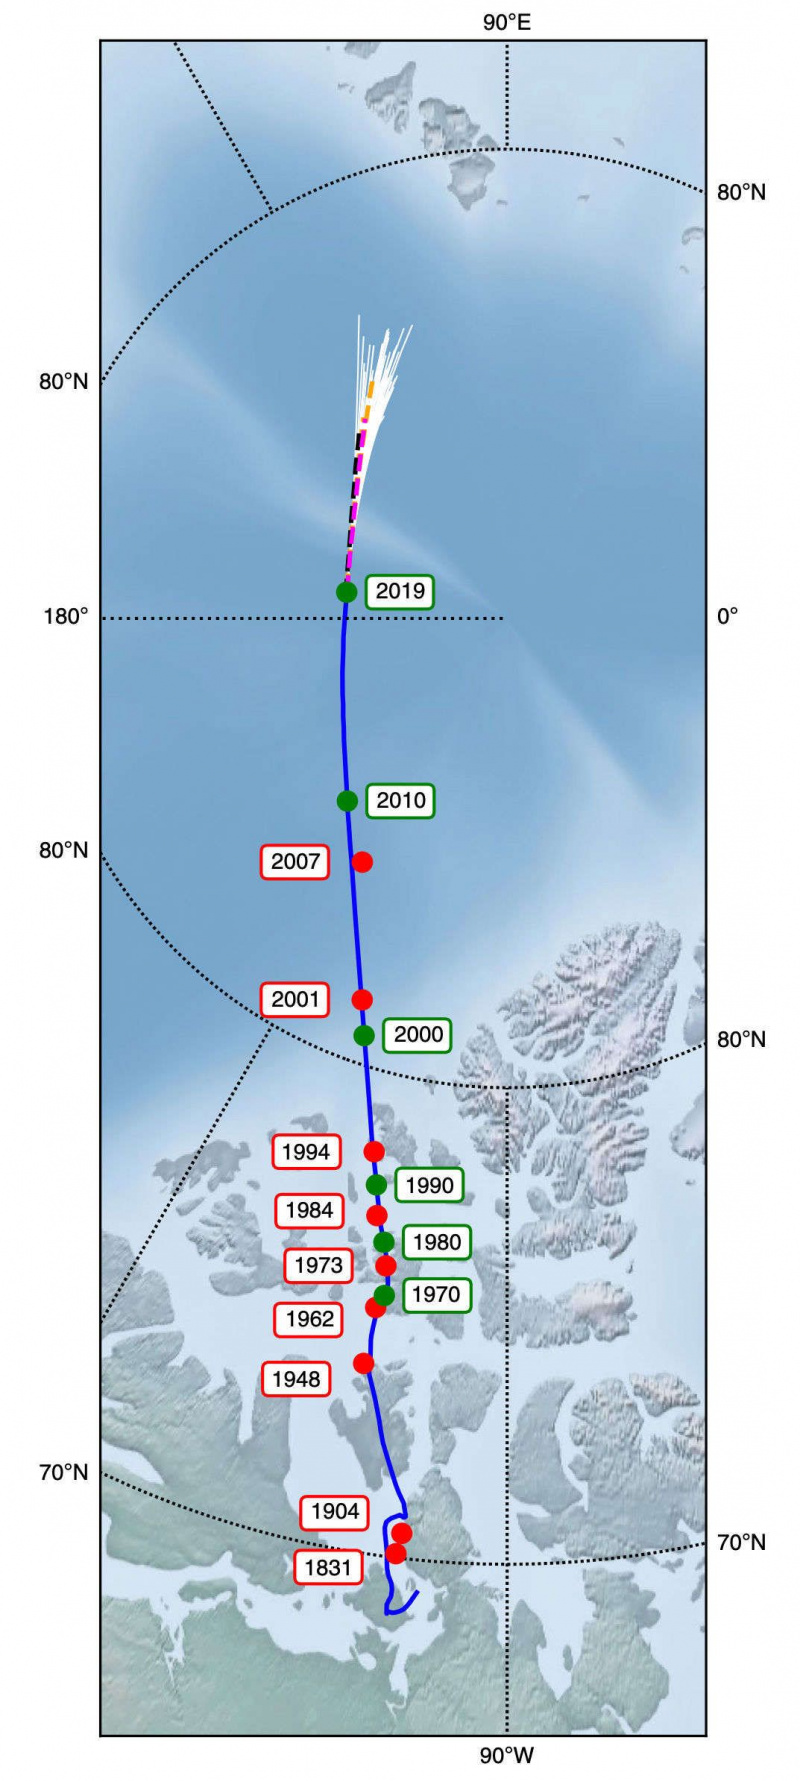 Земљин магнетни пол лута док силе дубоко под земљом делују. Модели показују предвиђену позицију након 2019. године (беле линије које се разилазе при врху). Заслуге: Ливерморе ет ал.